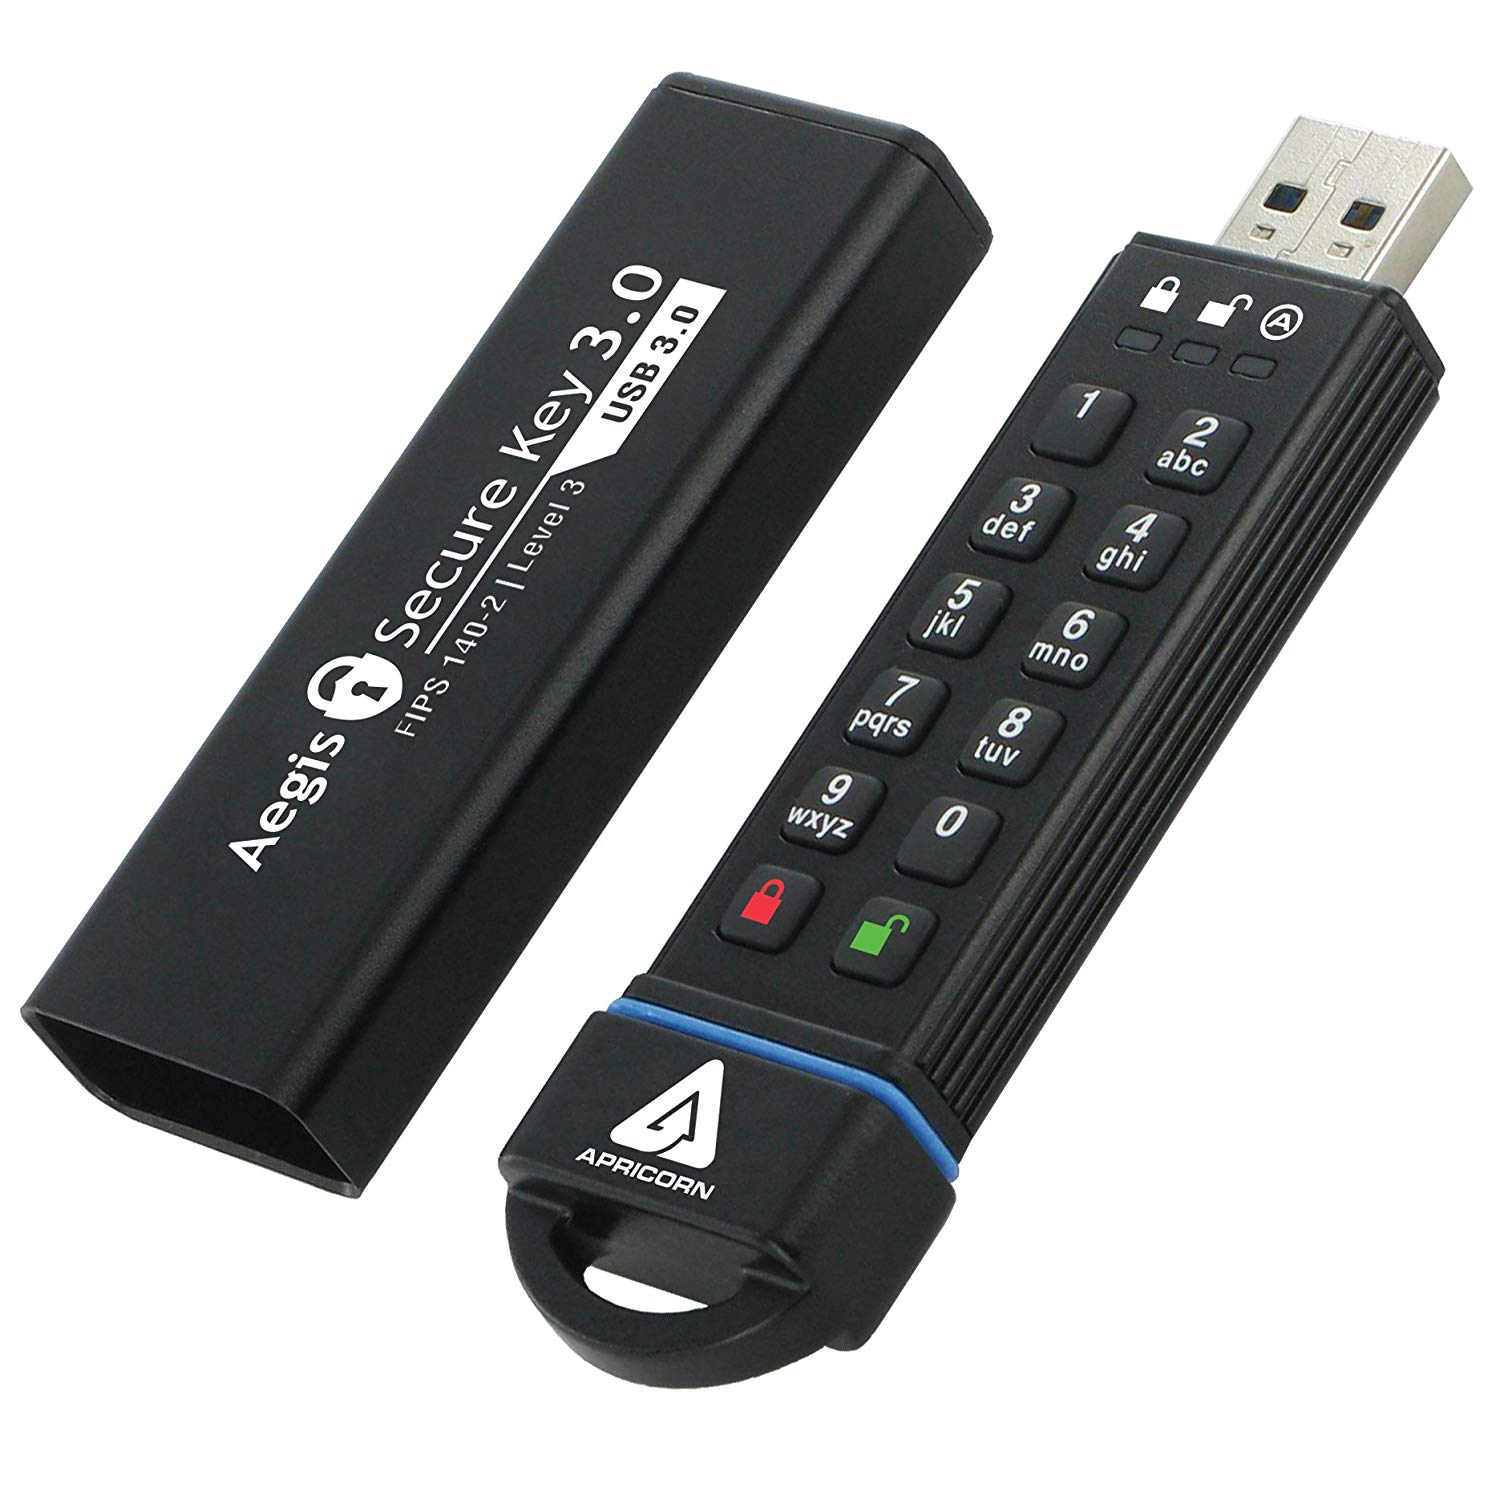 Encrypt USB Drives apricon aegis secure encryption key